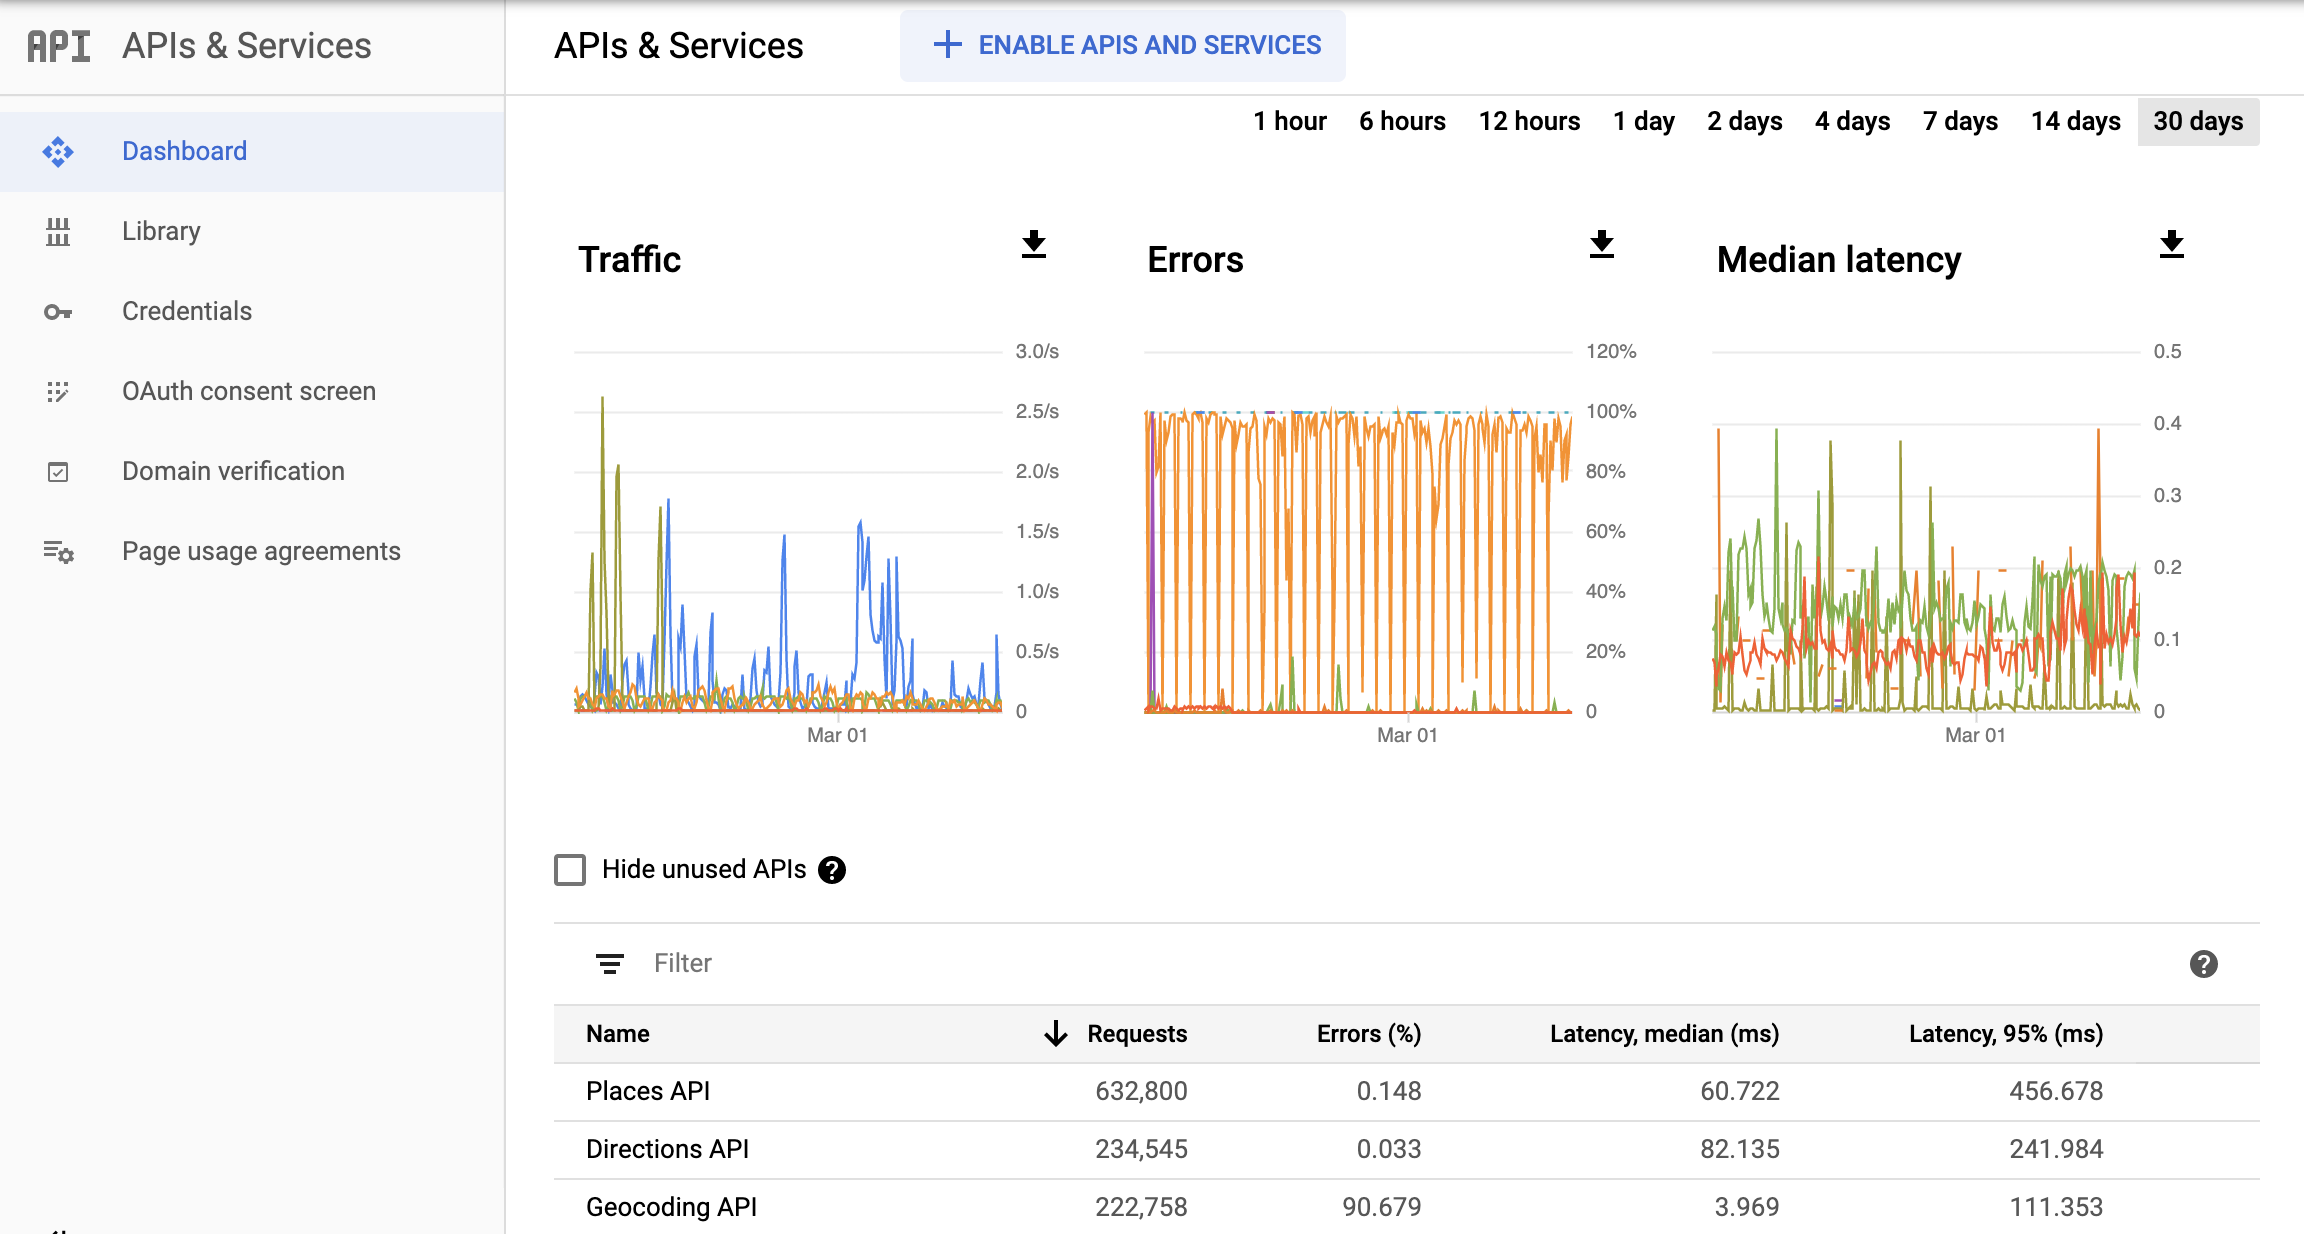 Google Cloud 控制台中的 Monitoring API 页面的屏幕截图，显示了“API 和服务”报告的信息中心。其中分别显示了“流量”“错误”和“延迟时间中位数”图表。这些图表可显示 1 小时到 30 天的数据。